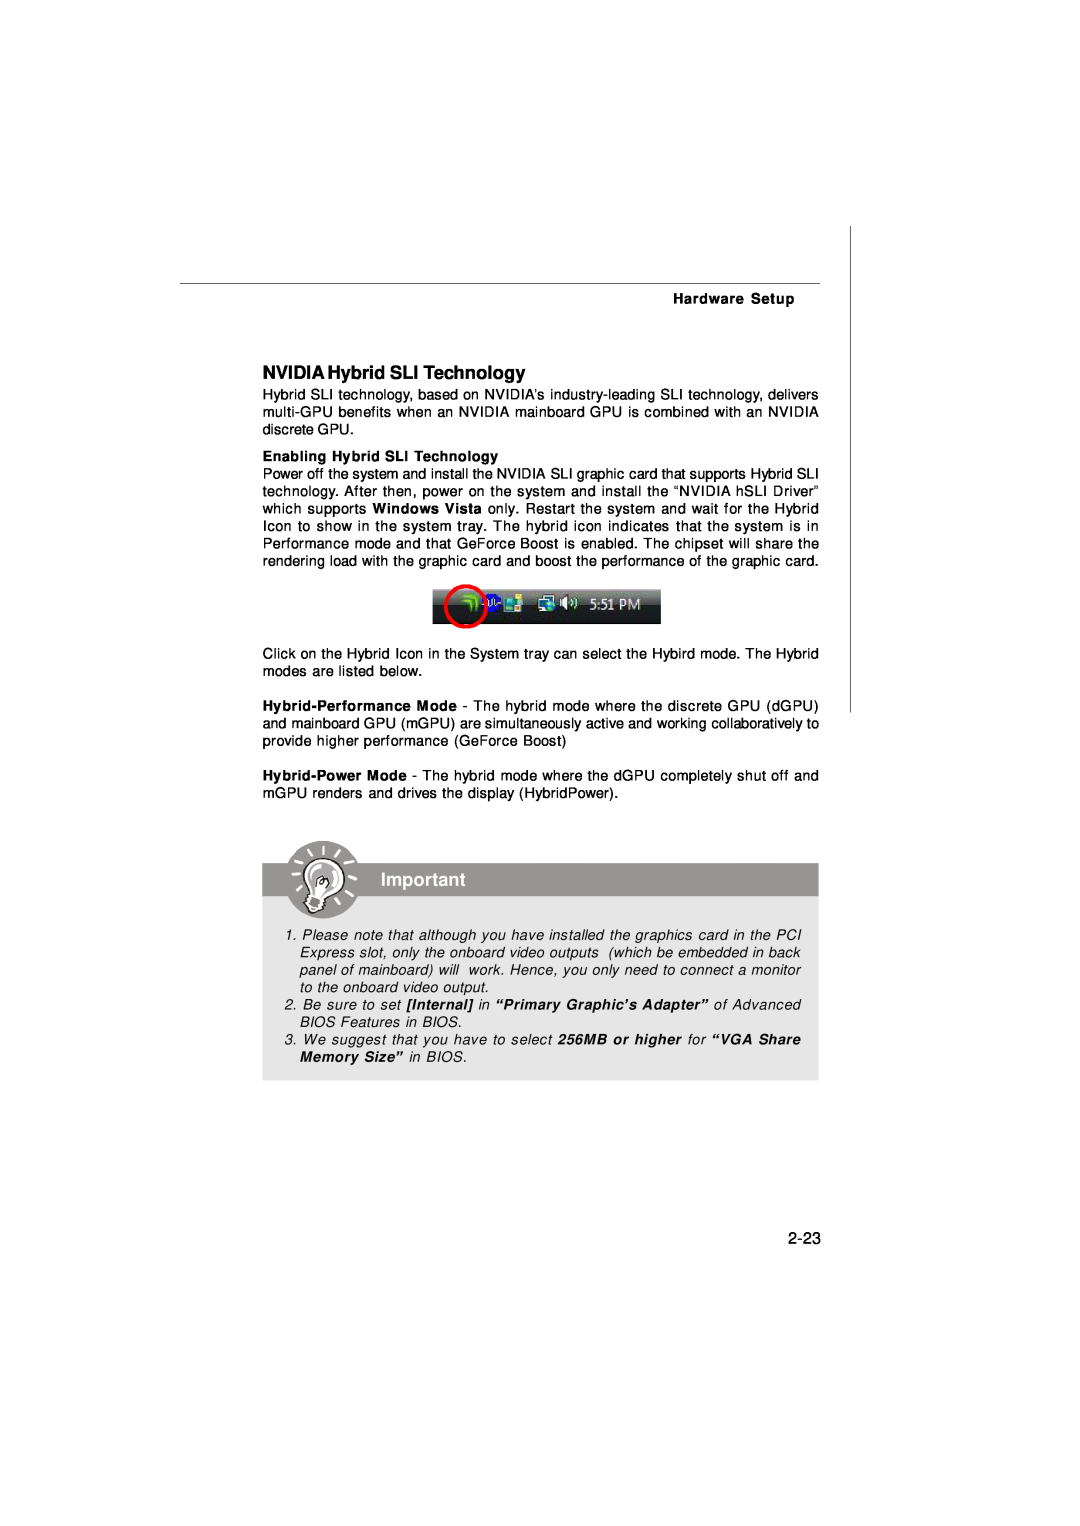 Nvidia MS-7374 manual NVIDIA Hybrid SLI Technology, 2-23, Enabling Hybrid SLI Technology, Hardware Setup 